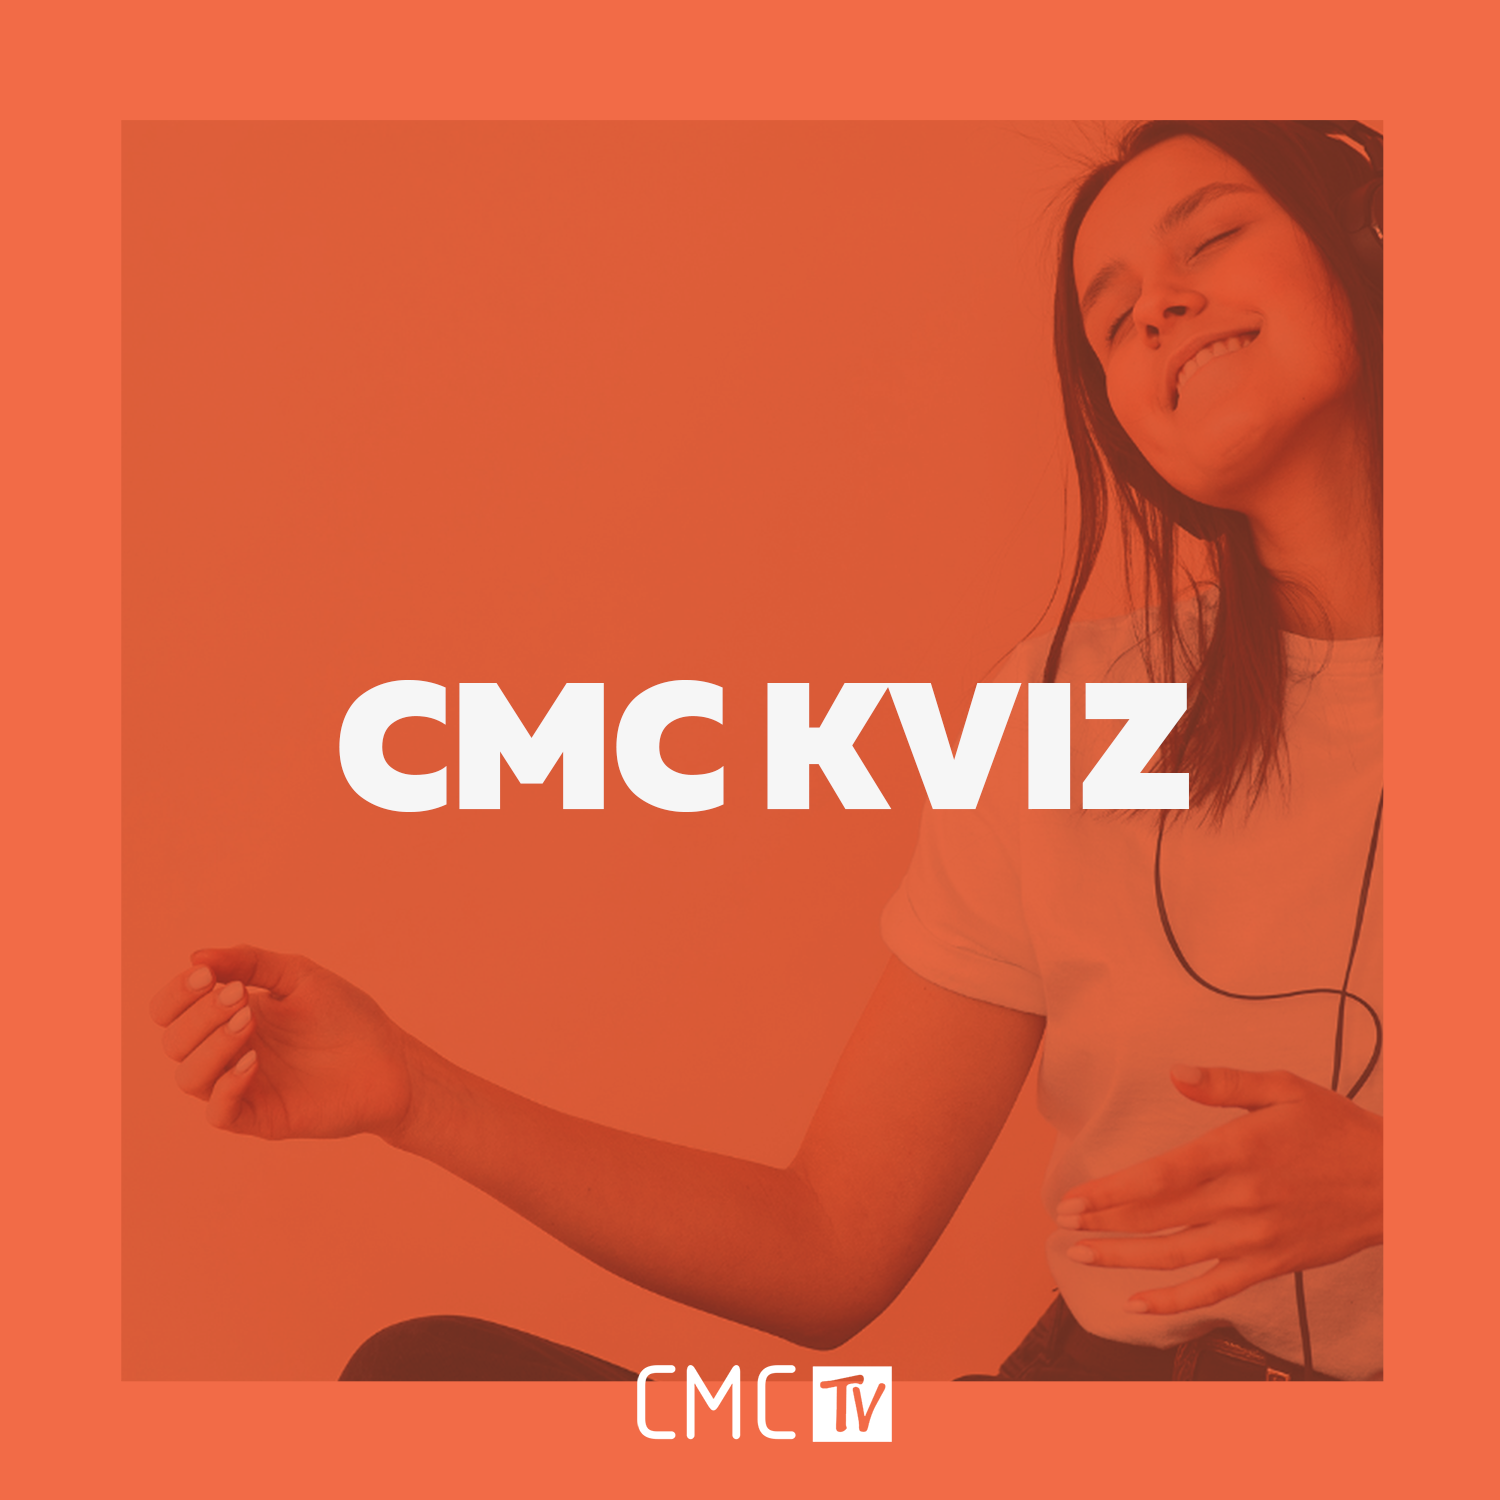 CMC kviz – Provjeri koliko dobro poznaješ pjesme iz 2021. godine